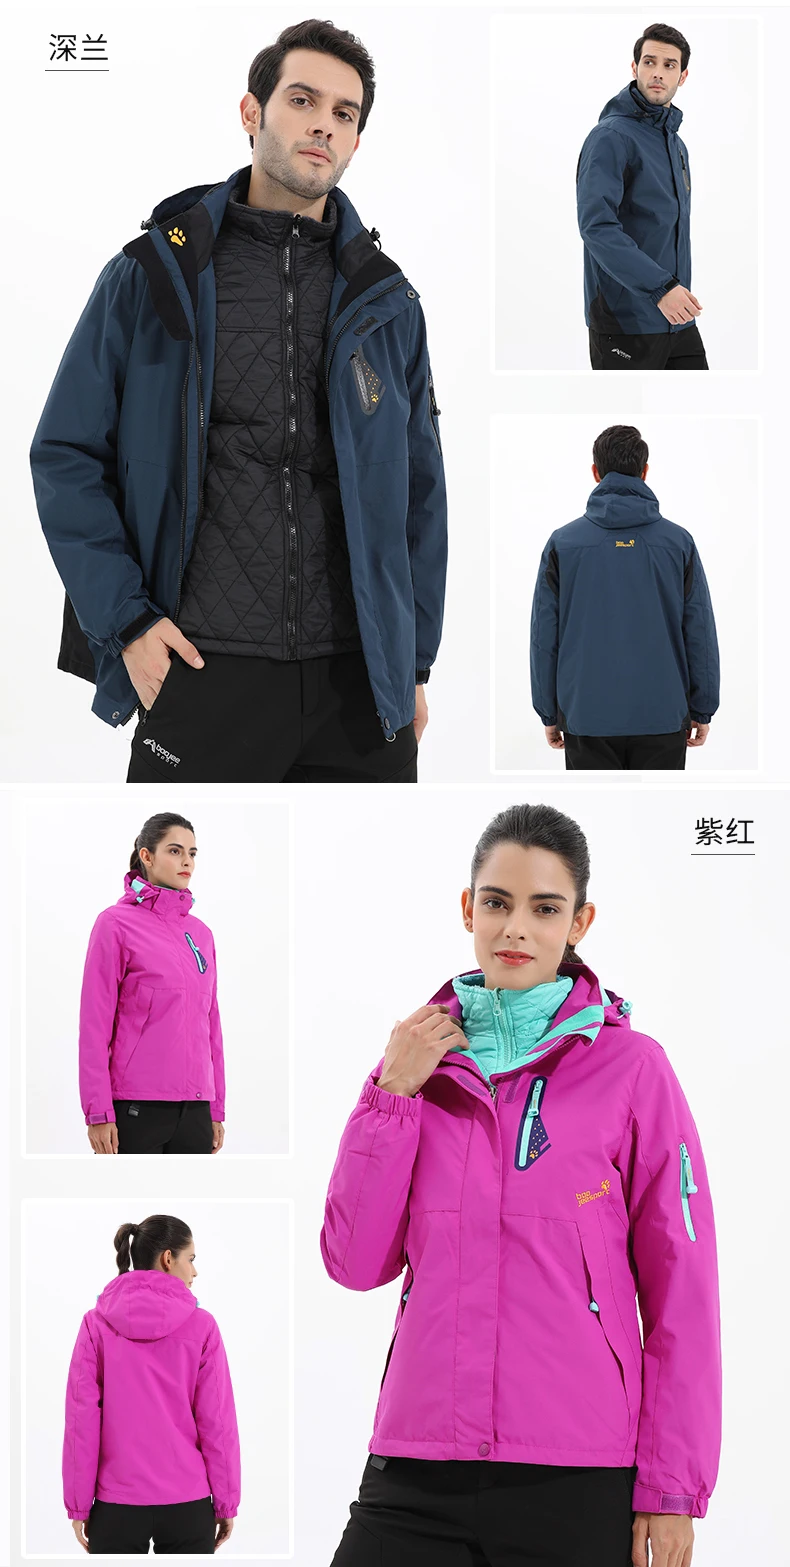 Мужская зимняя флисовая водонепроницаемая куртка 3 в 1, женская спортивная теплая брендовая куртка для походов, кемпинга, походов, лыжного спорта